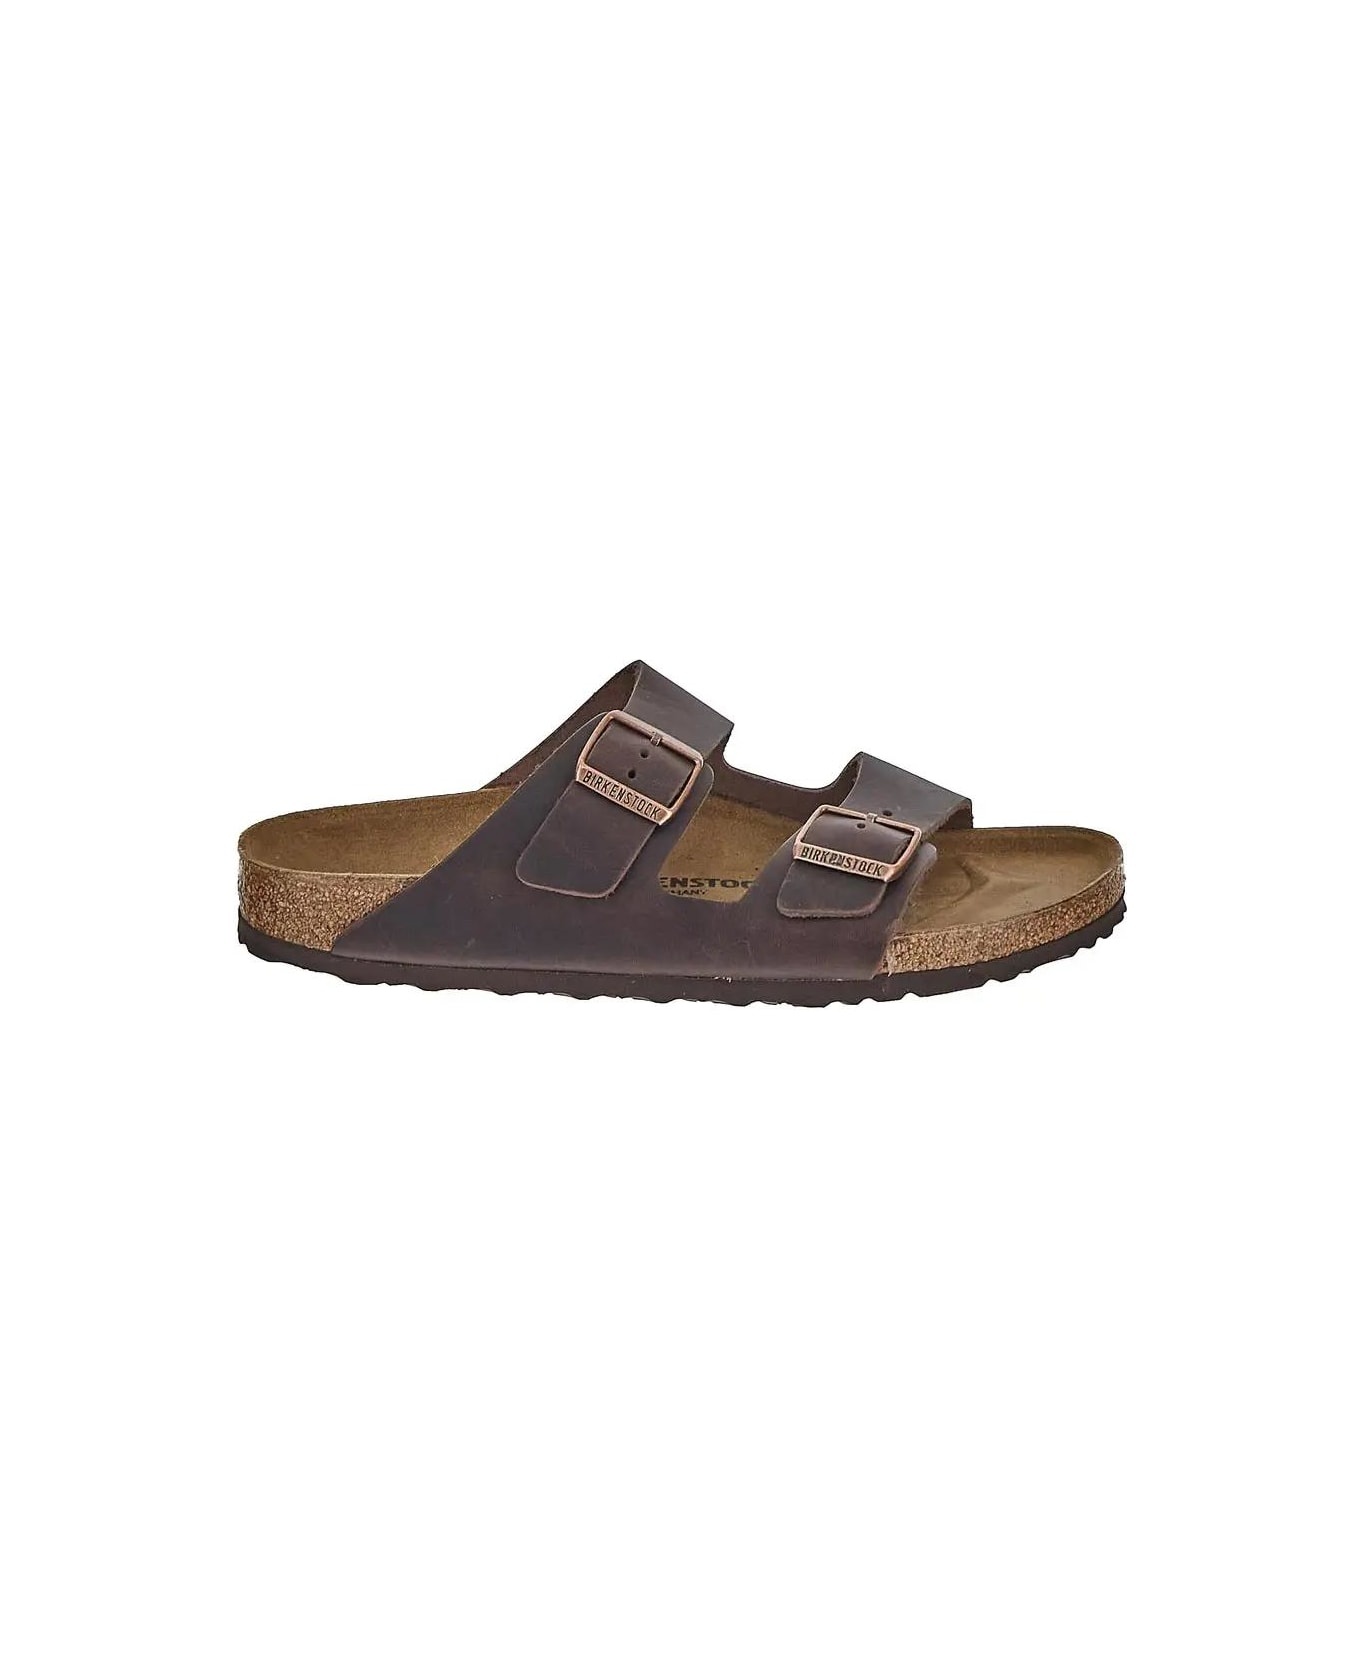 Arizona Sandals - 1